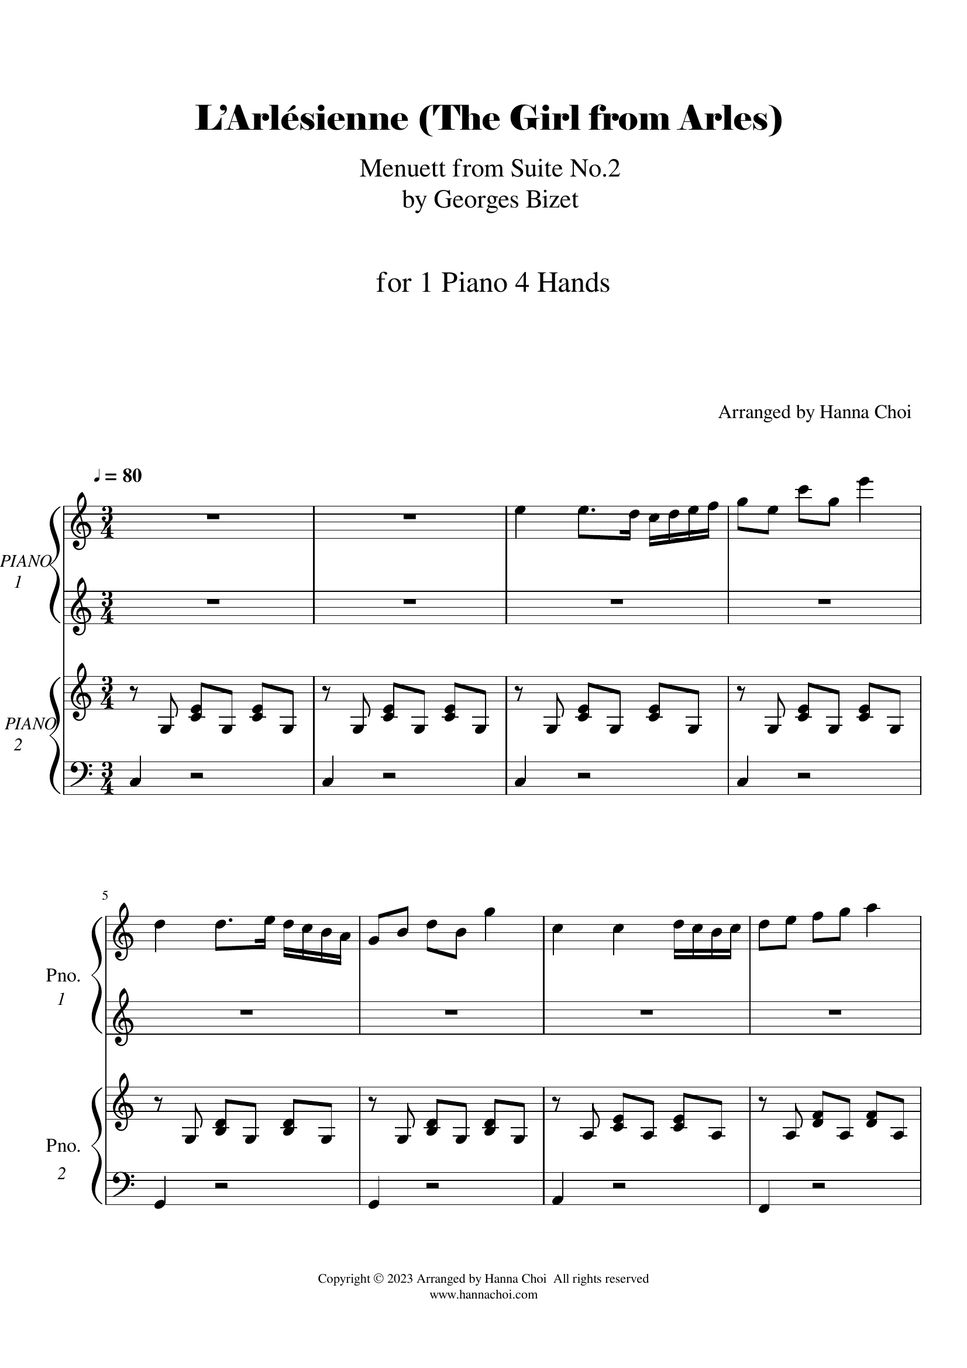 비제 G.Bizet - 아를의 여인 (Arlesienne) Menuett from Suite No.2 (1Piano 4 Hands 듀엣) by YANGCHO